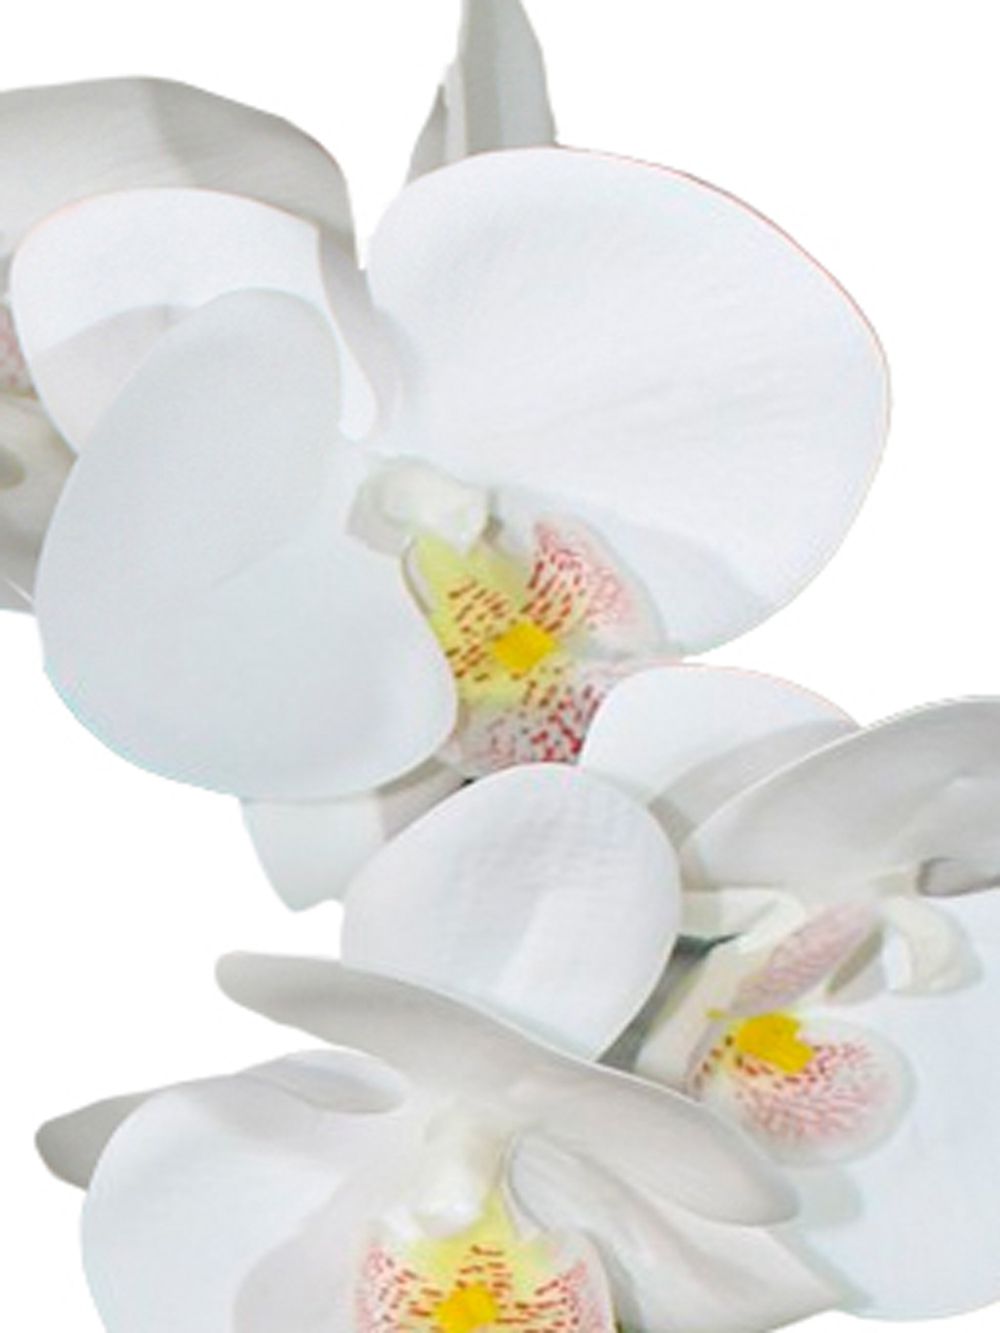 Искусственные цветы Орхидеи Люкс 3 ветки белые латекс 65см в кашпо